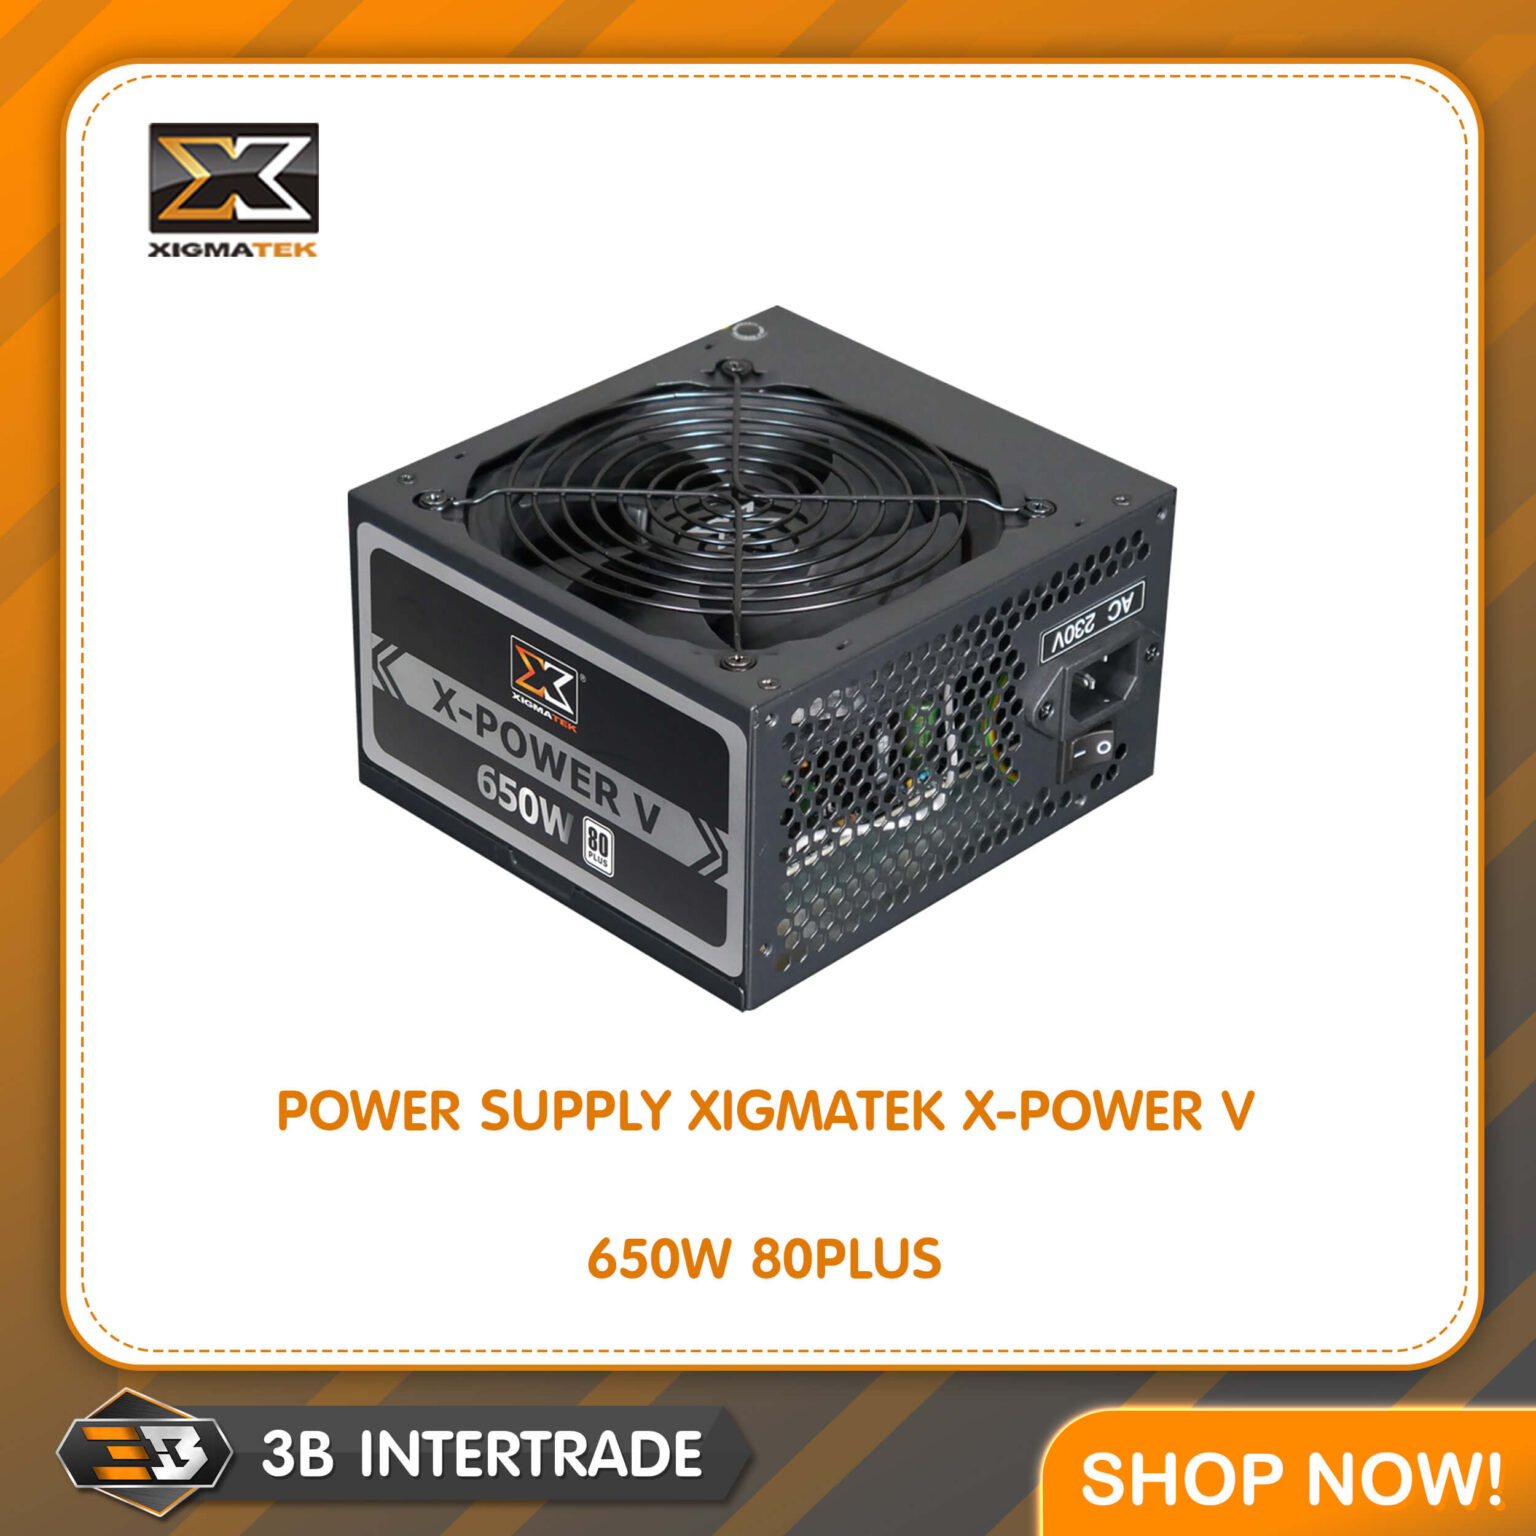 POWER SUPPLY (อุปกรณ์จ่ายไฟ) XIGMATEK X-POWER V 650W 80PLUS